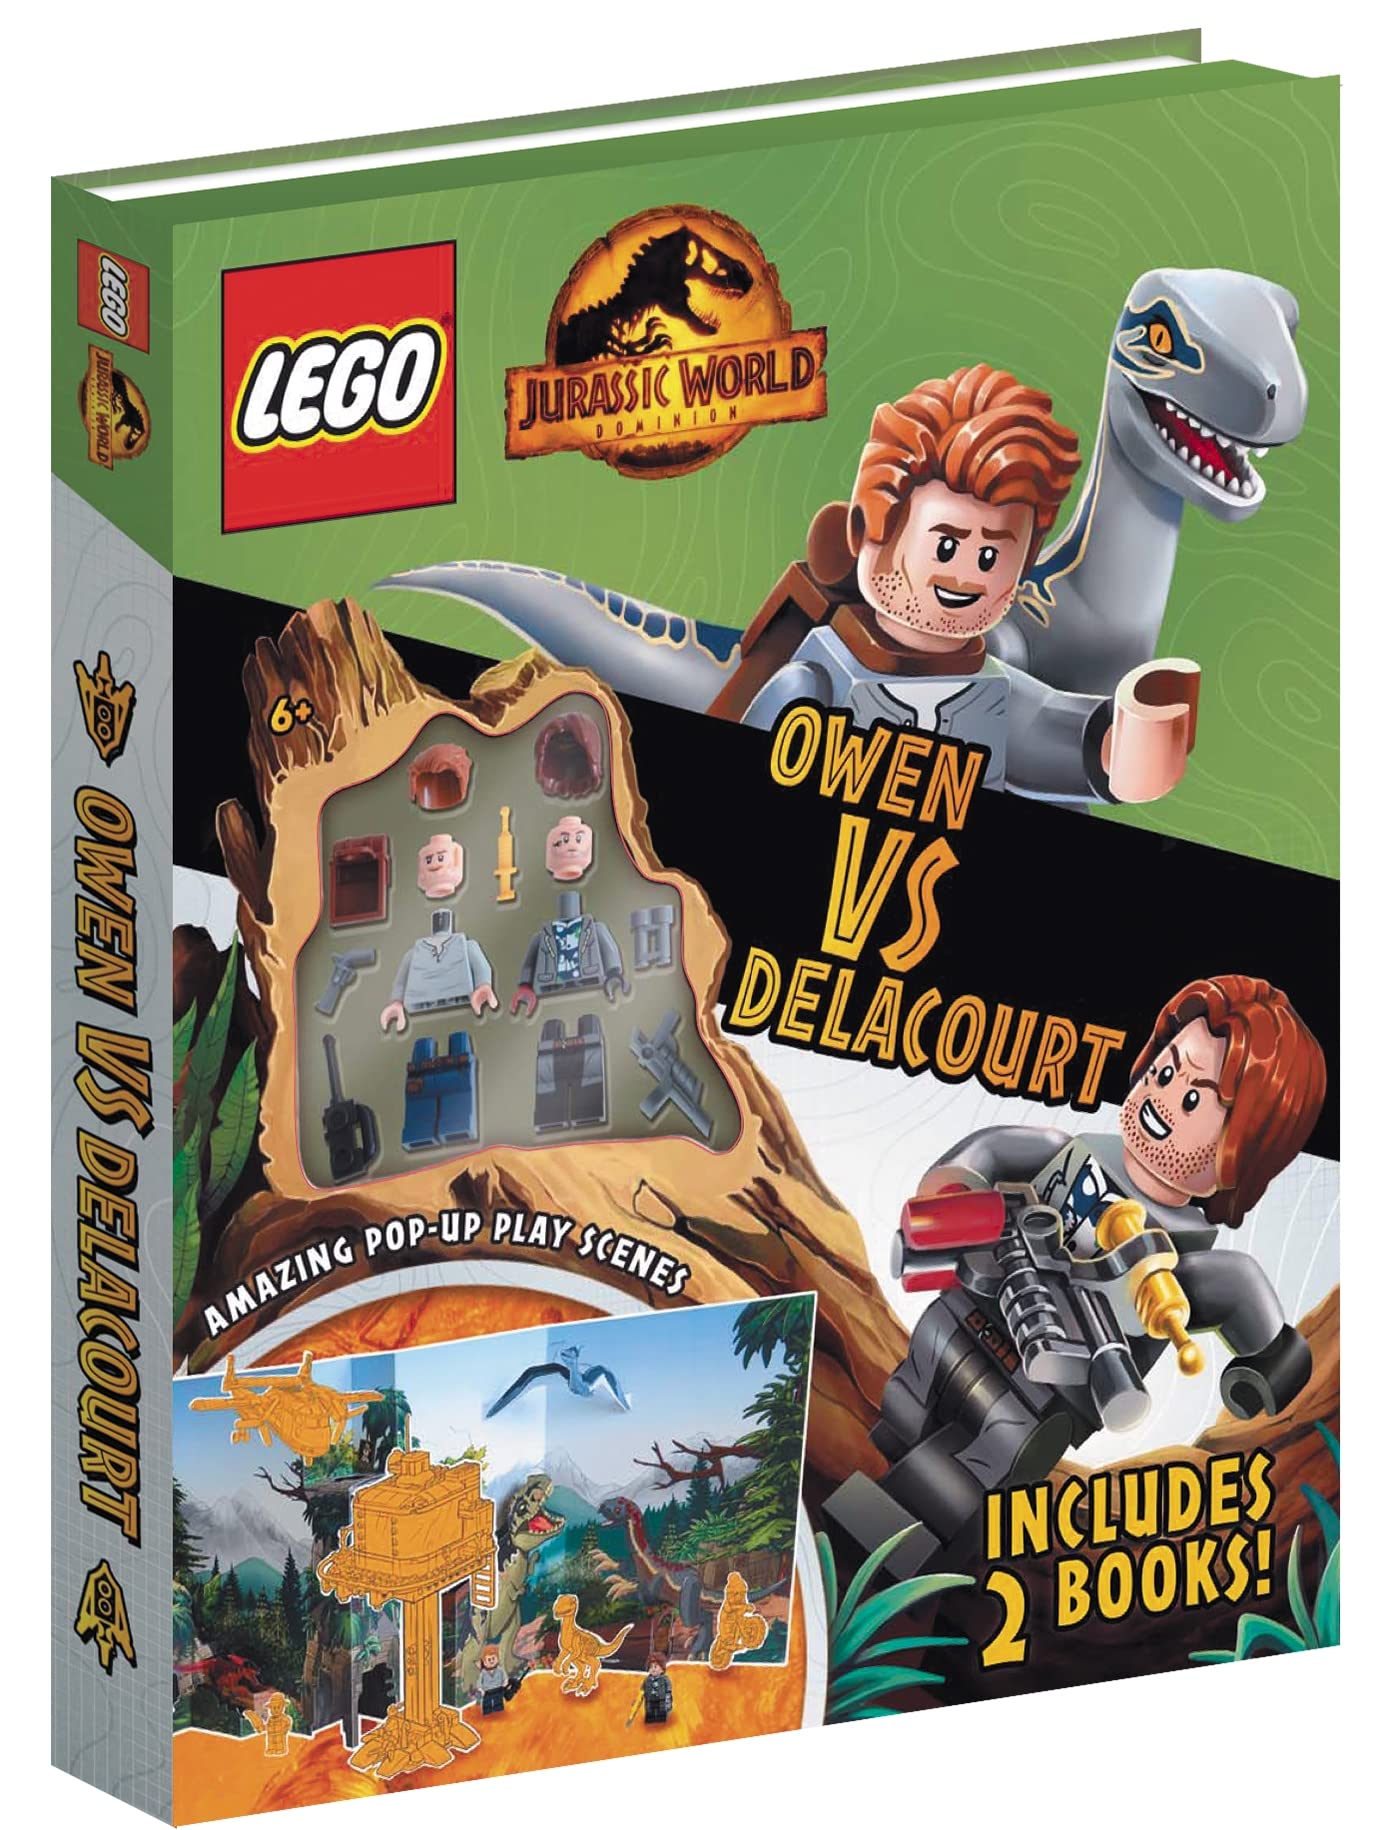 LEGO Jurassic World: Owen vs Delacourt |